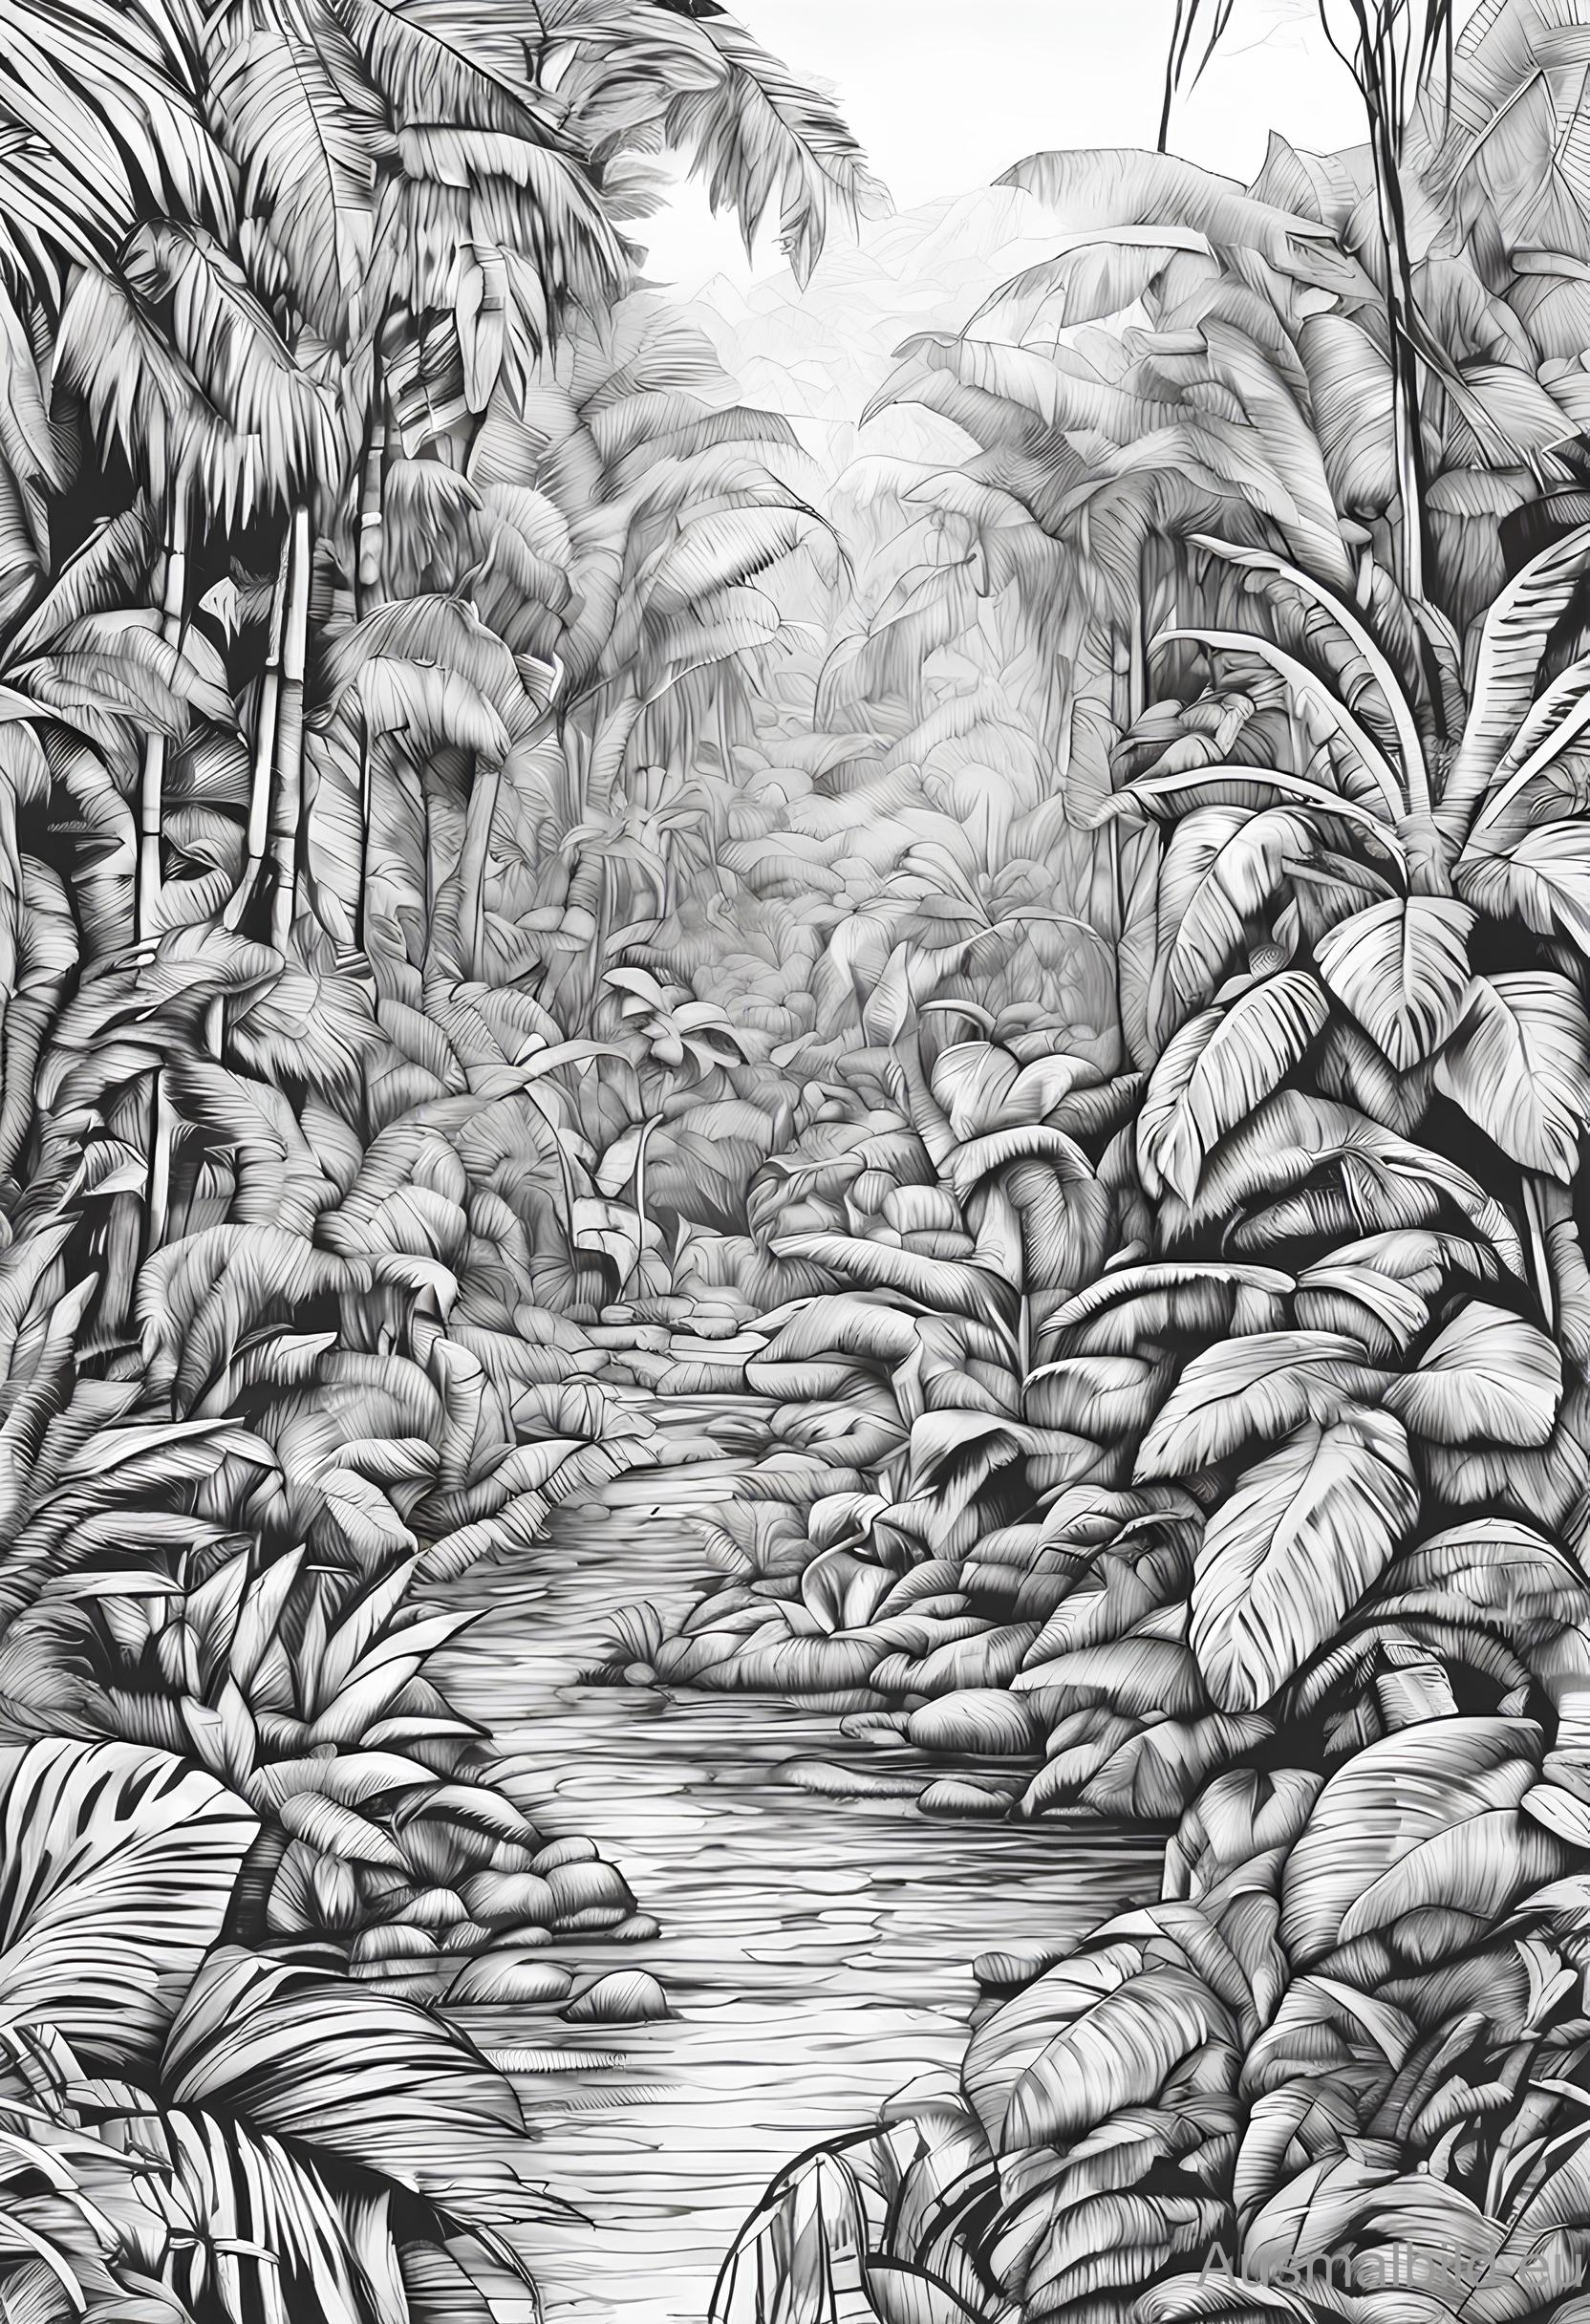 Ausmalbild: Bach im Dschungel